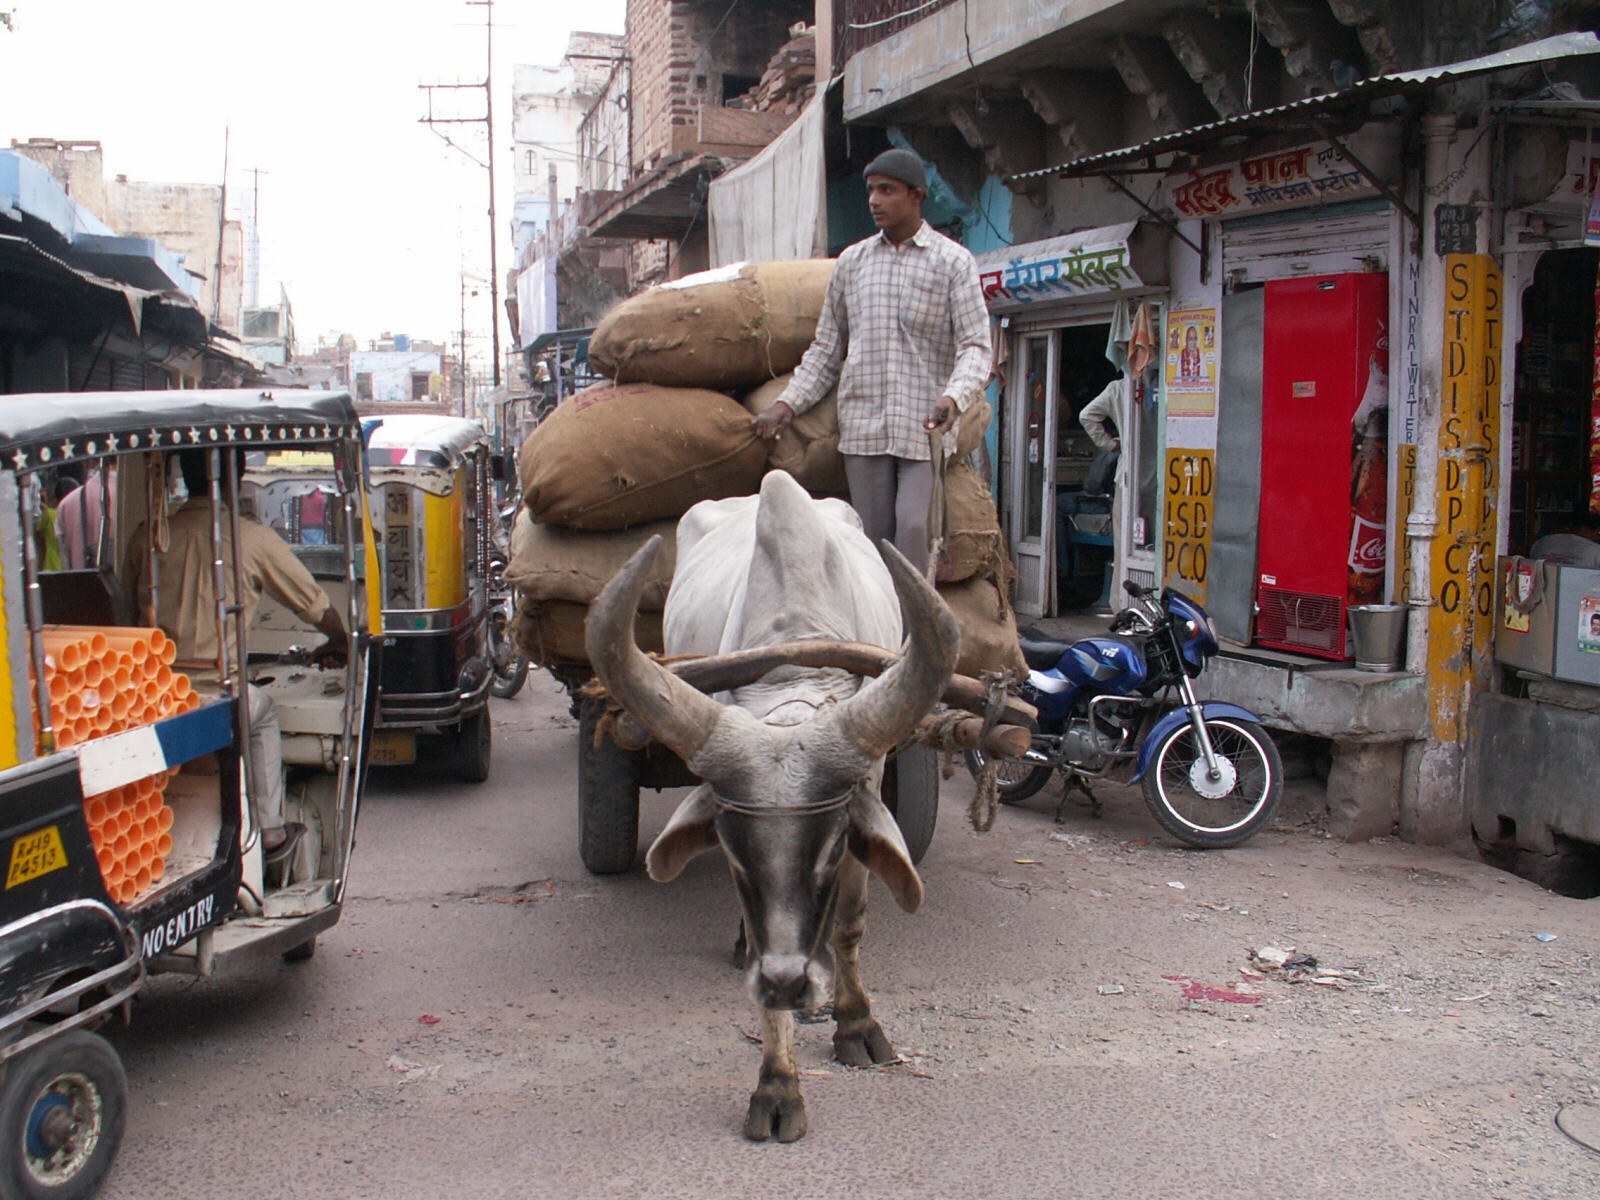 An ox cart in a street in Jodhpur, Rajasthan